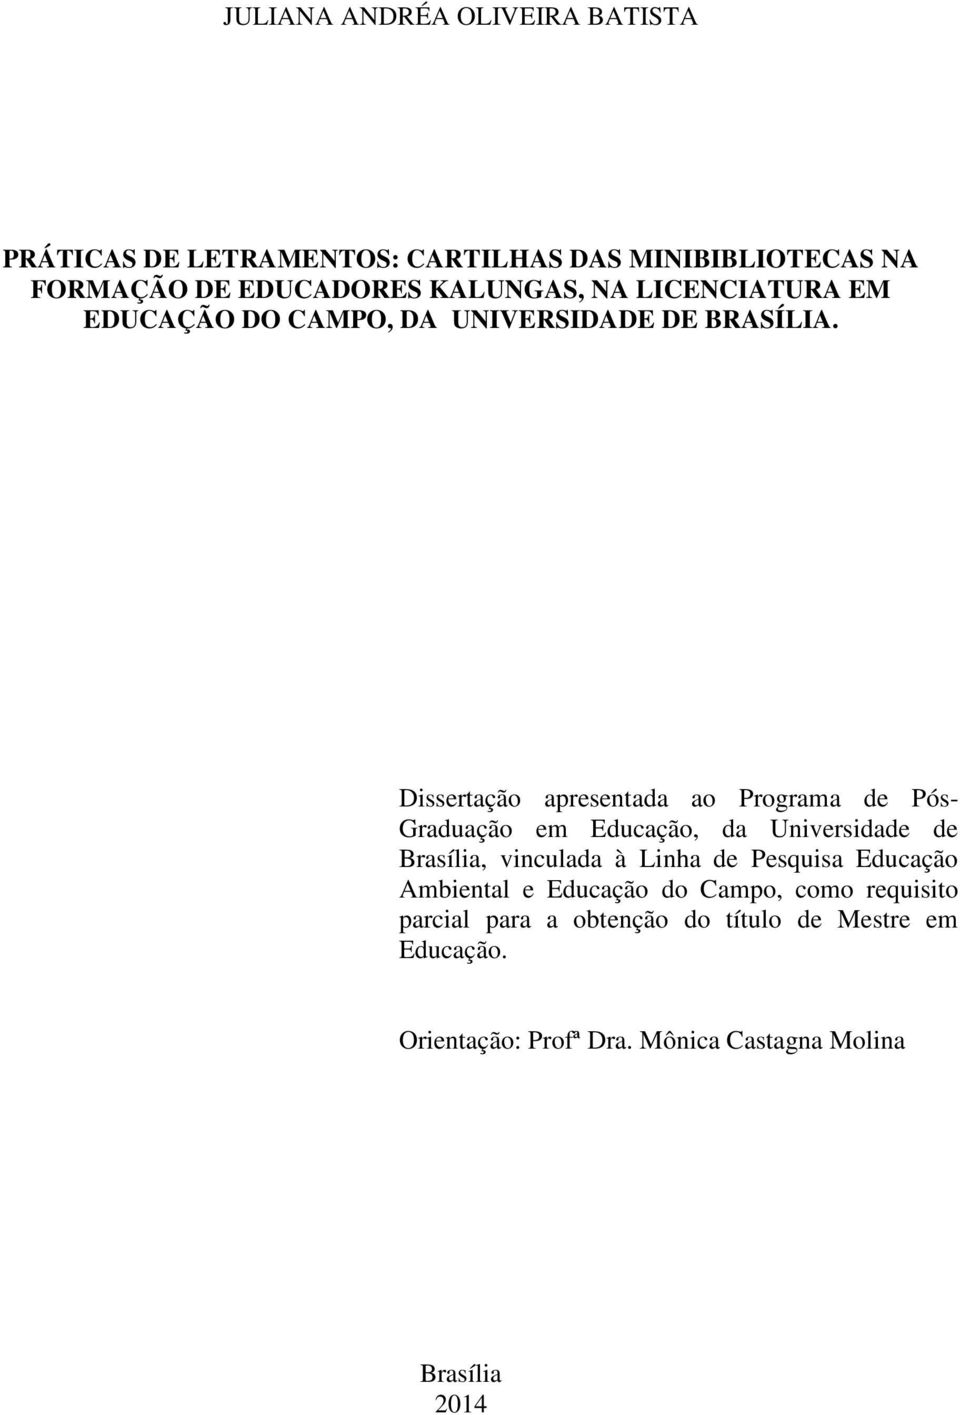 Dissertação apresentada ao Programa de Pós- Graduação em Educação, da Universidade de Brasília, vinculada à Linha de